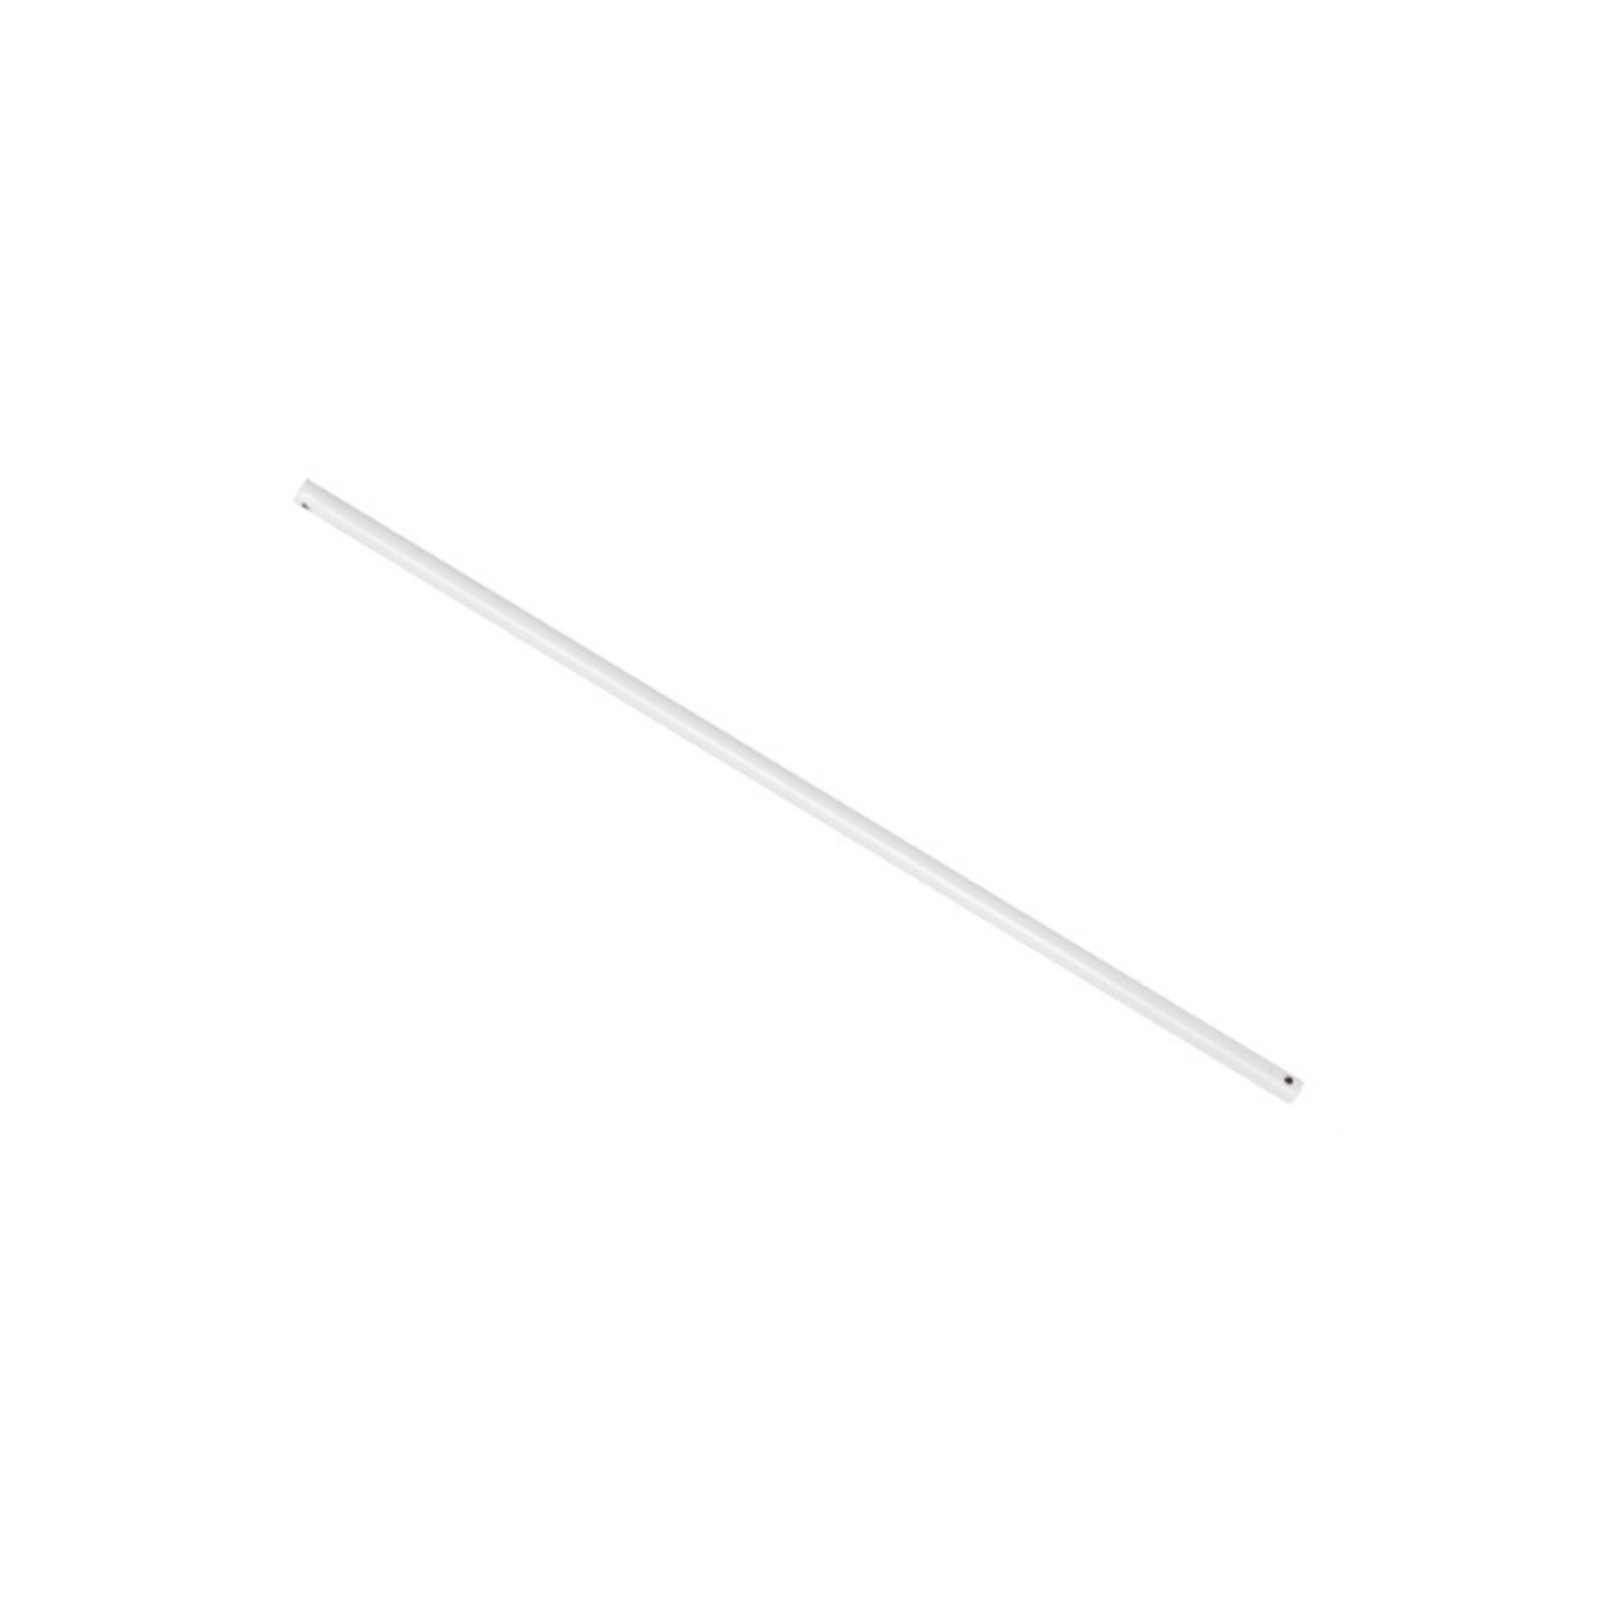 Extension rod for Megara fan, 90 cm white